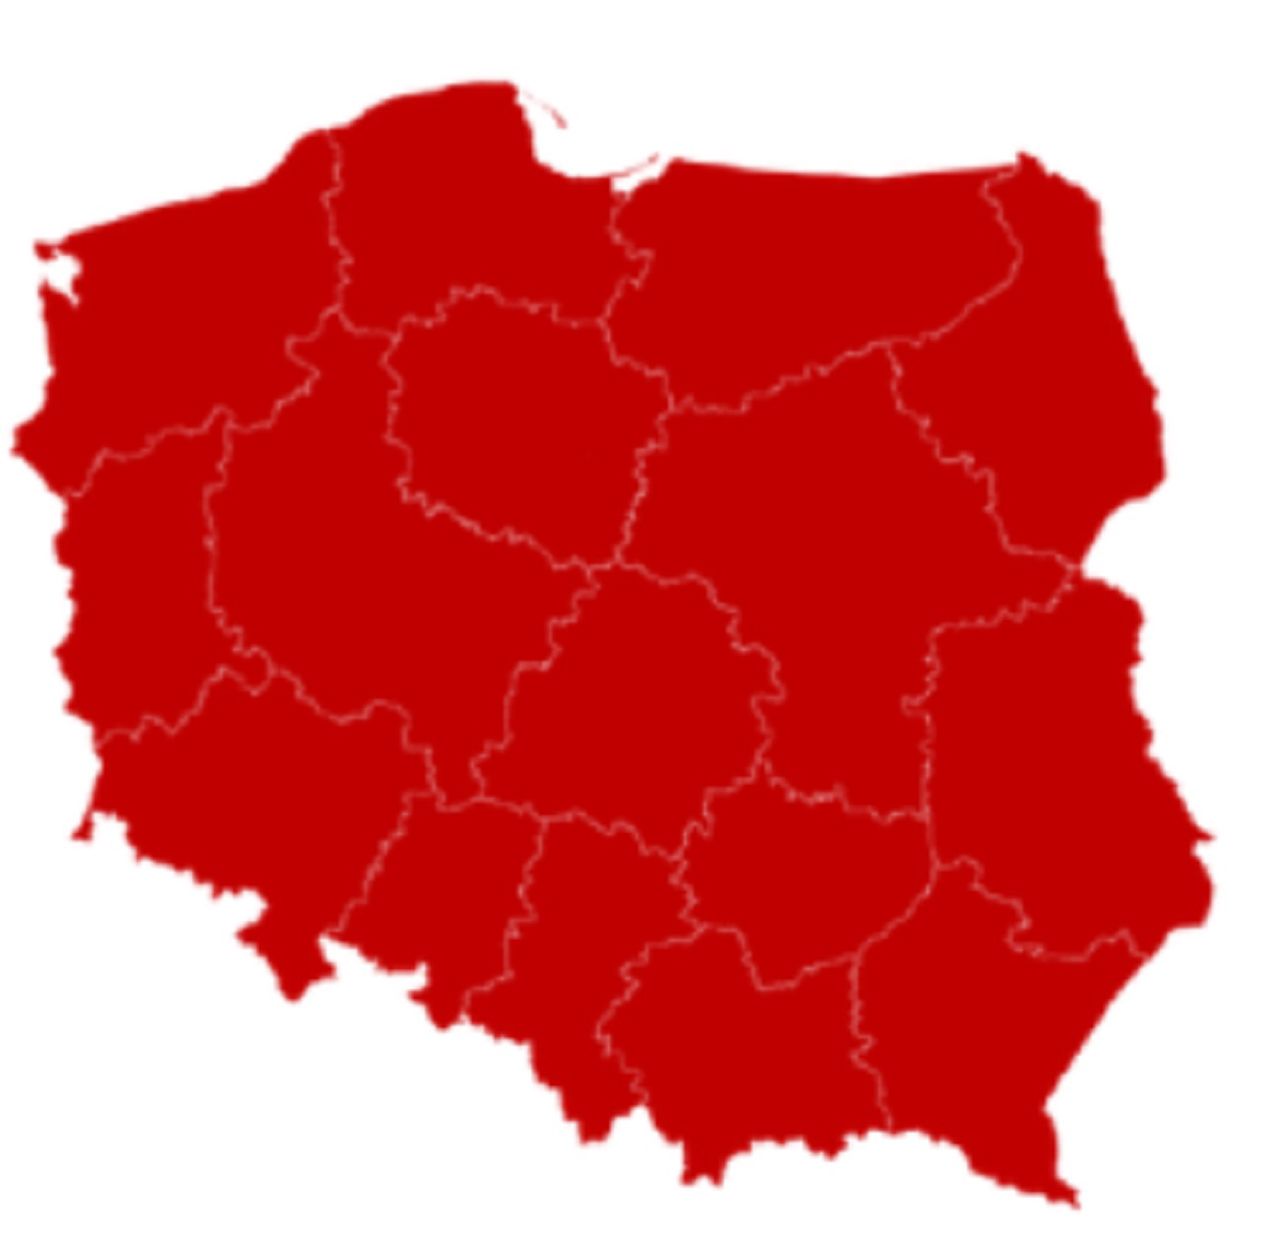 STOP COVID. RCB zachęca Polaków do pobrania aplikacji. Alert przypomina o czerwonej strefie - Alert RCB. Rząd zachęca do pobrania specjalnej aplikacji